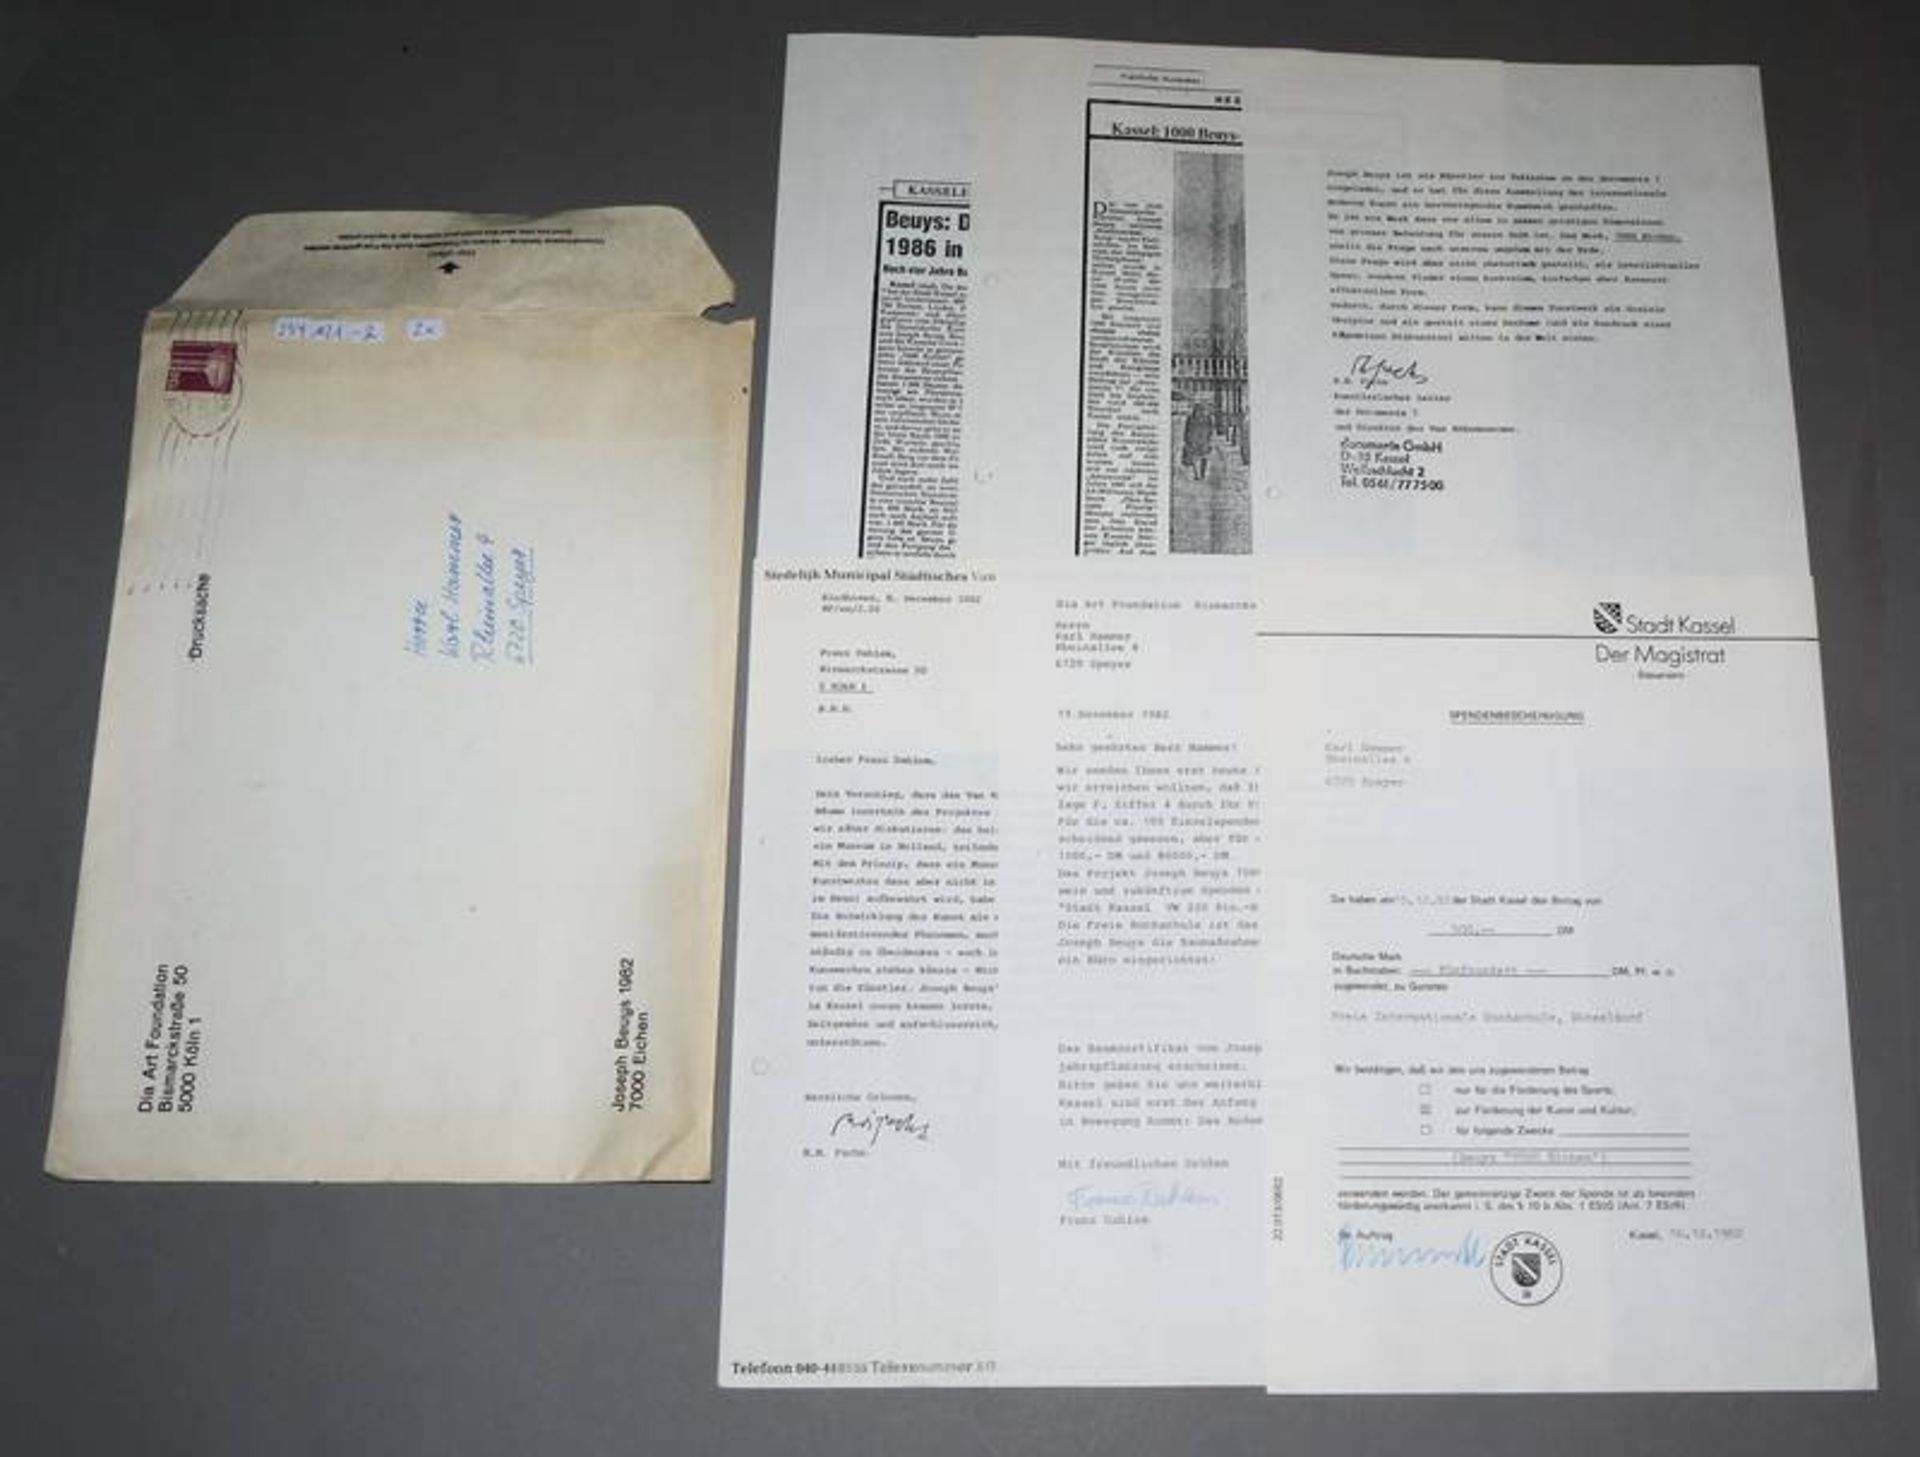 Joseph Beuys, "7000 Eichen" Katalog & div. Dokumente (originale Spendenbescheinigung für eine Eiche - Bild 2 aus 4